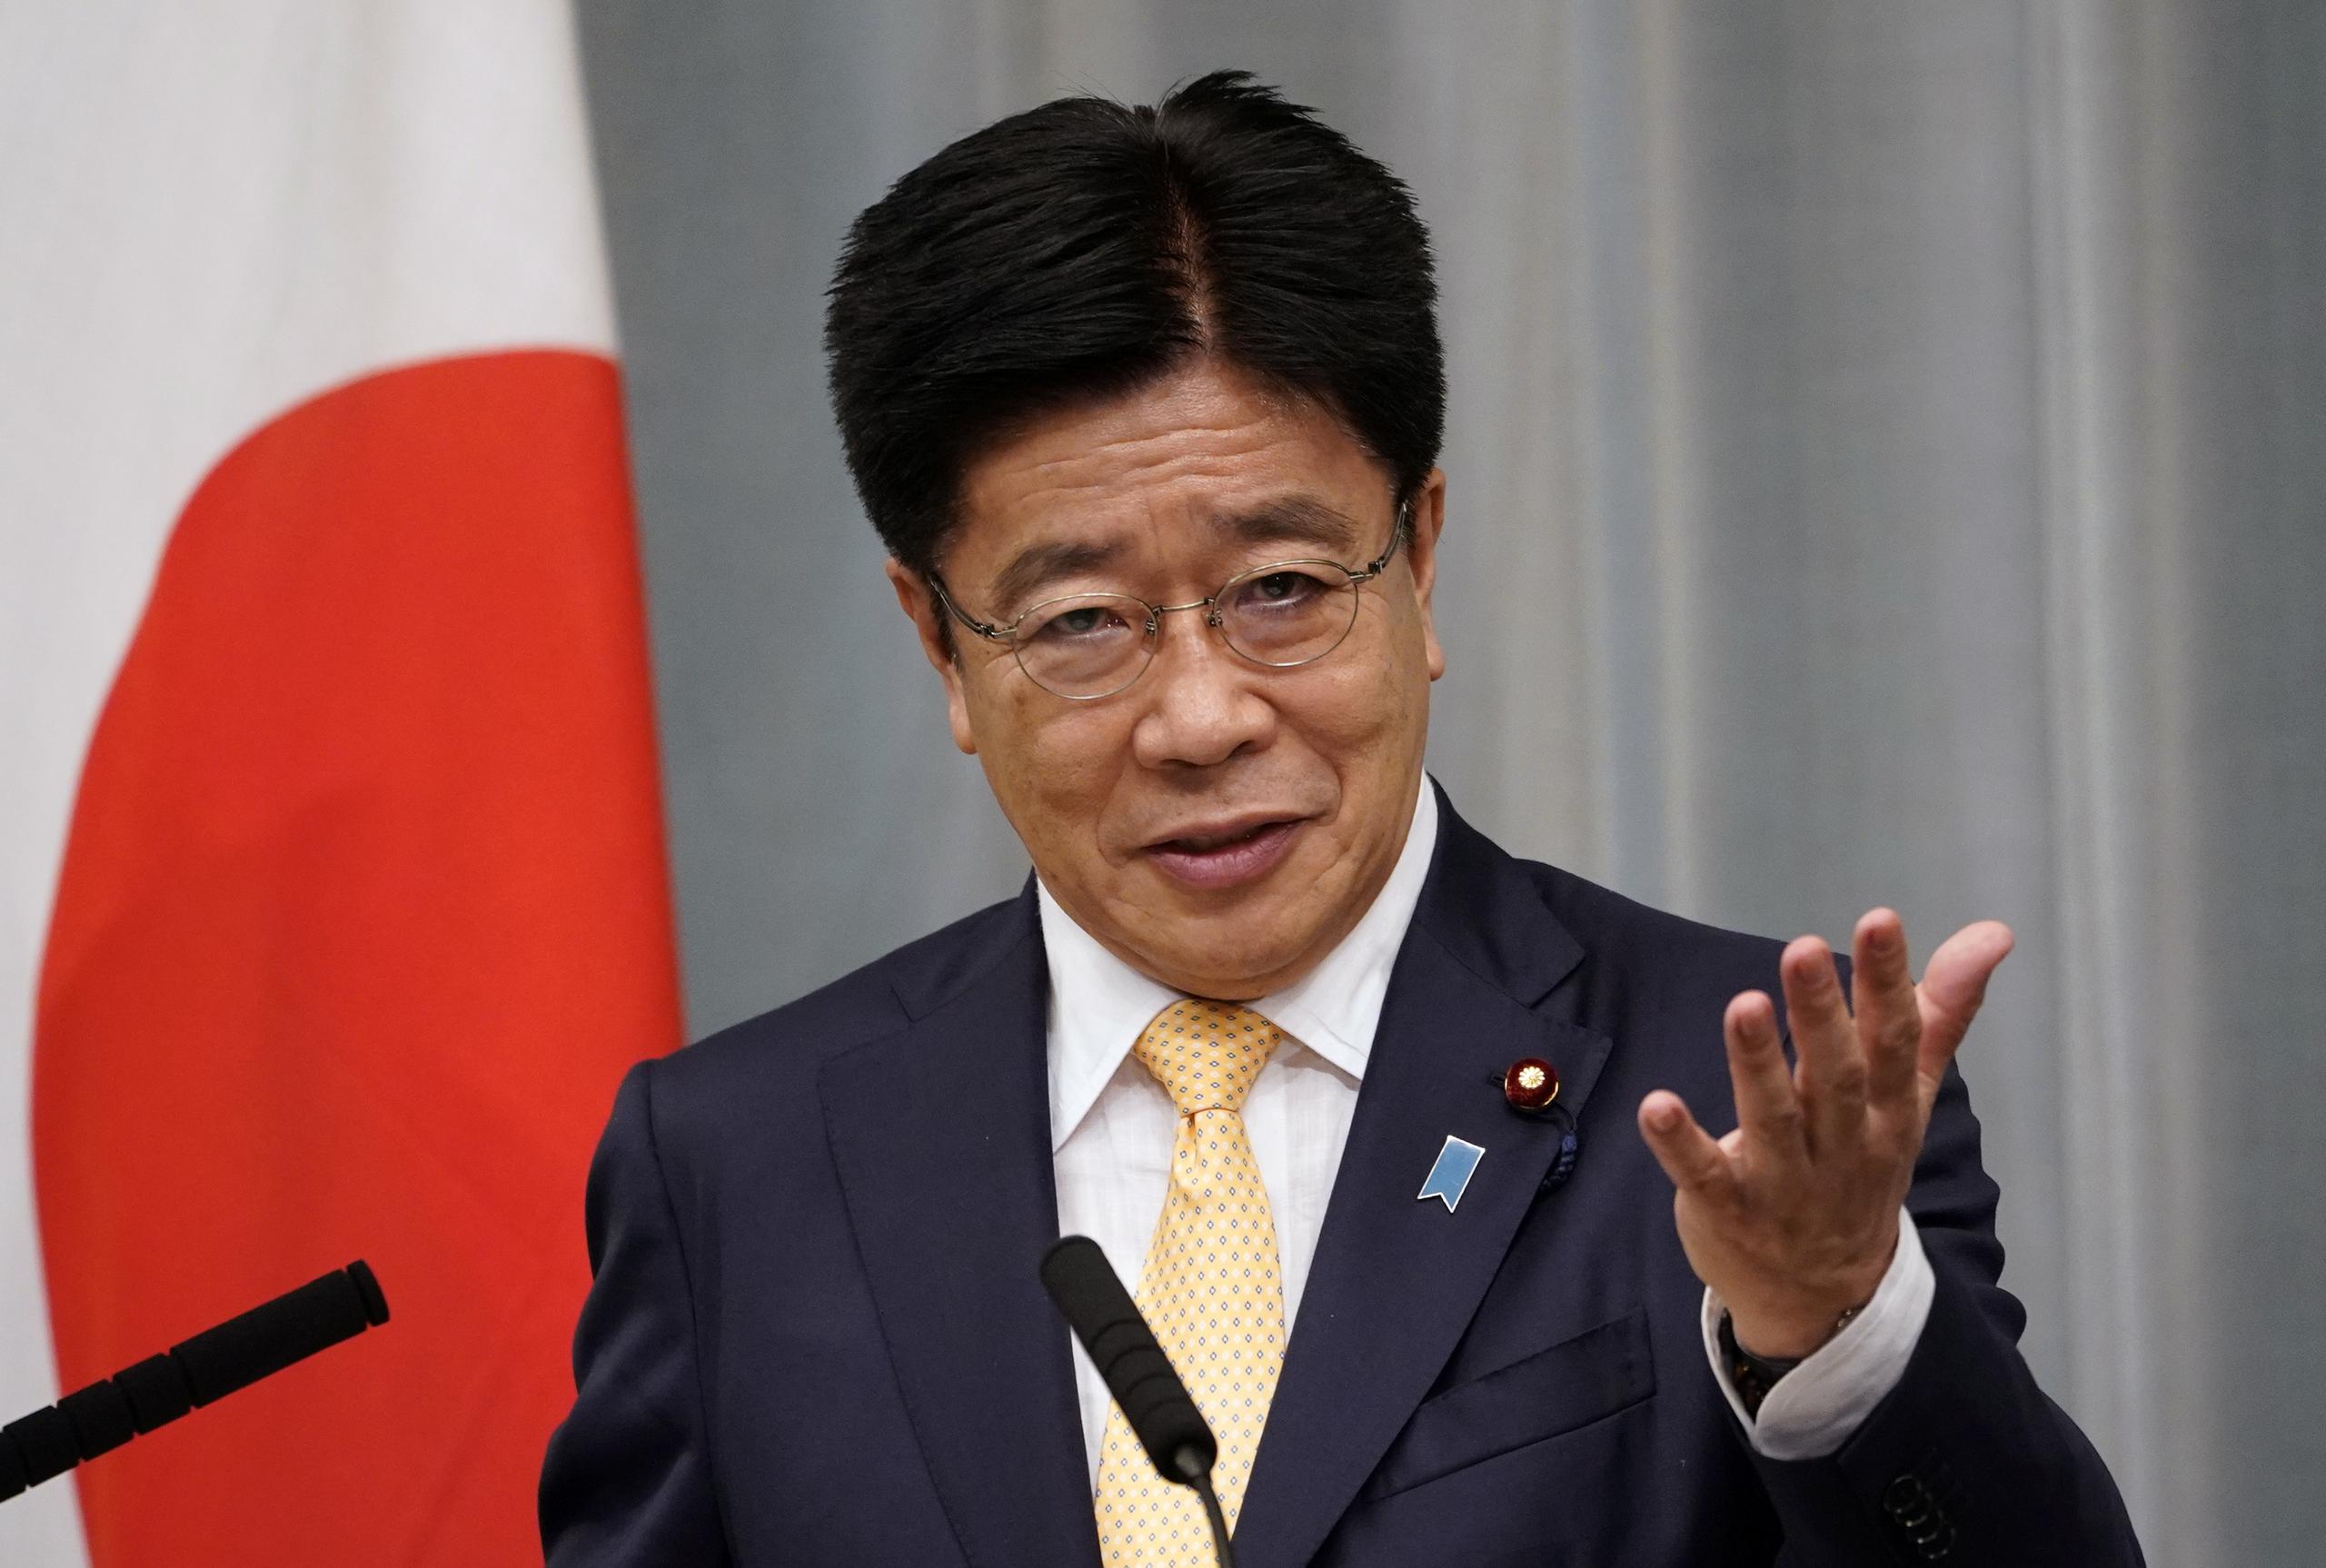 El ministro portavoz del Ejecutivo japonés, Katsunobu Kato, en una imagen de archivo. EFE/EPA/FRANCK ROBICHON
